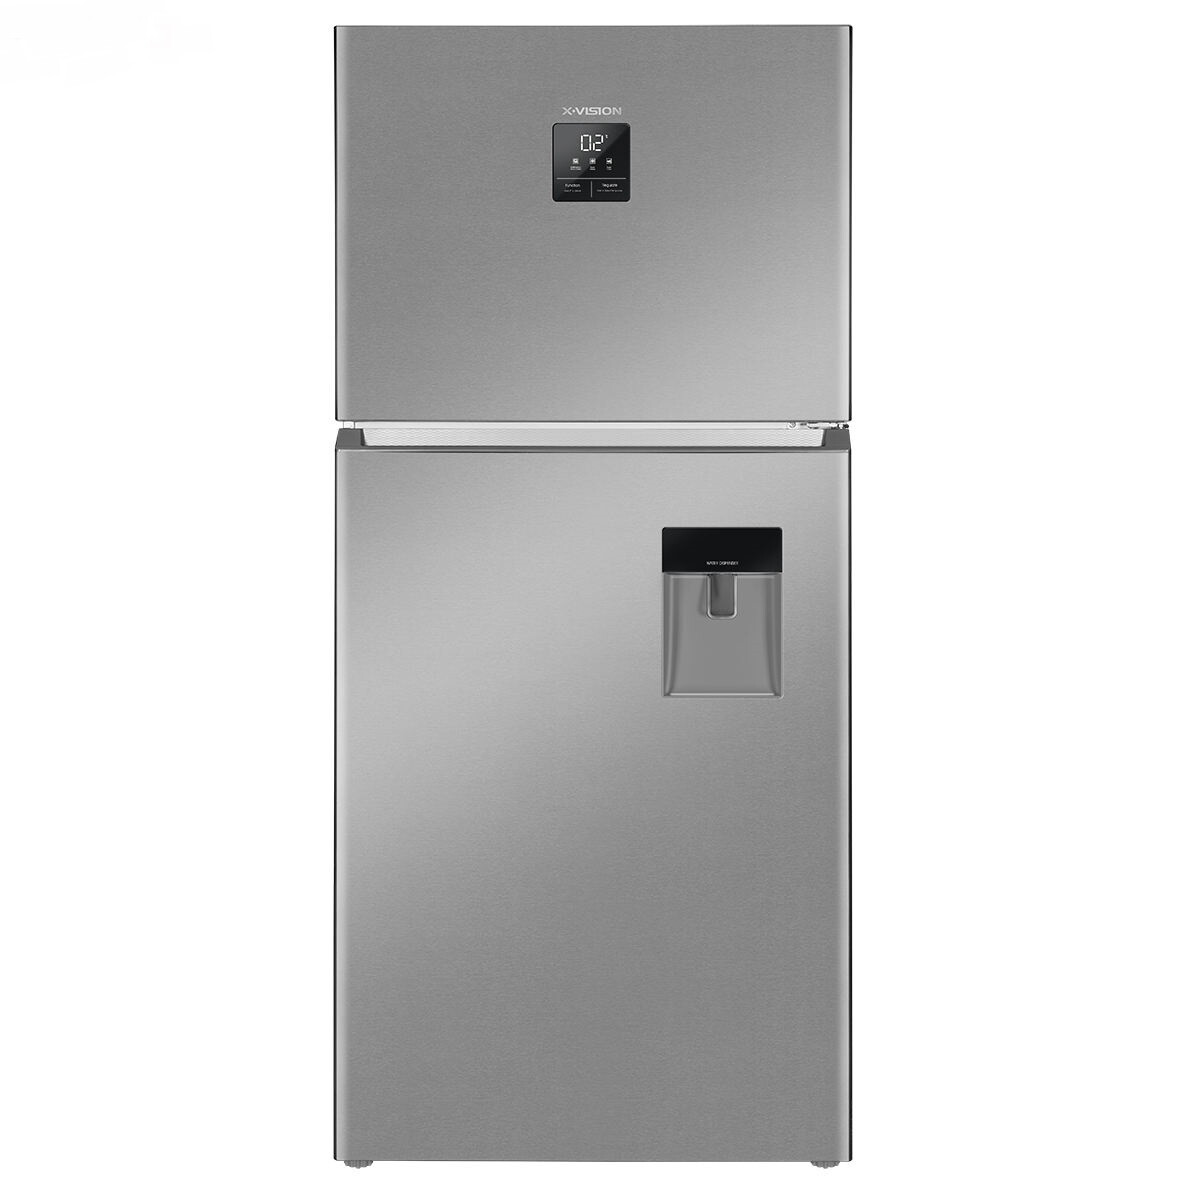 یخچال فریزر فریزر بالا ایکس ویژن مدل Xvision XTR-T862 - Xvision XTR-T862X-Vision Top Freezer Refrigerator | شیانچی